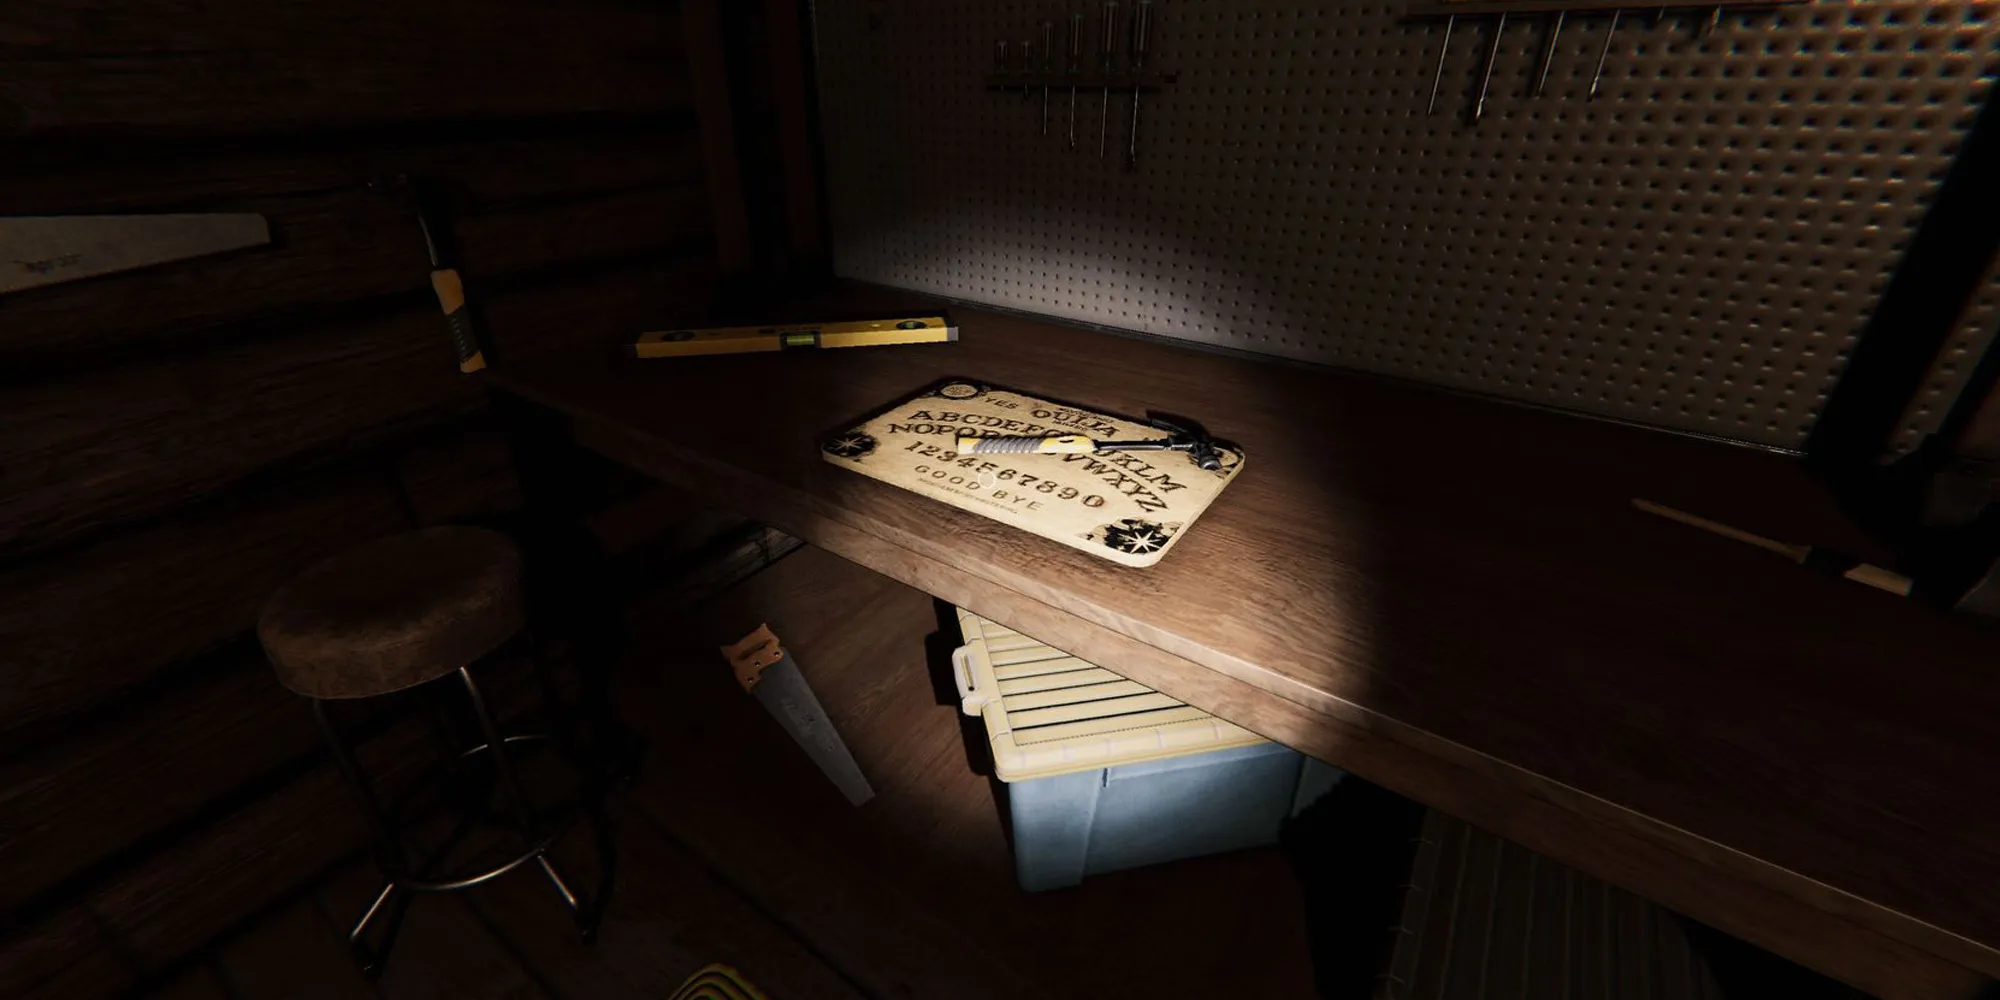 L'image représente un tableau ouija sur un bureau en bois avec un marteau dessus à la ferme de Bleasdale dans Phasmophobia.